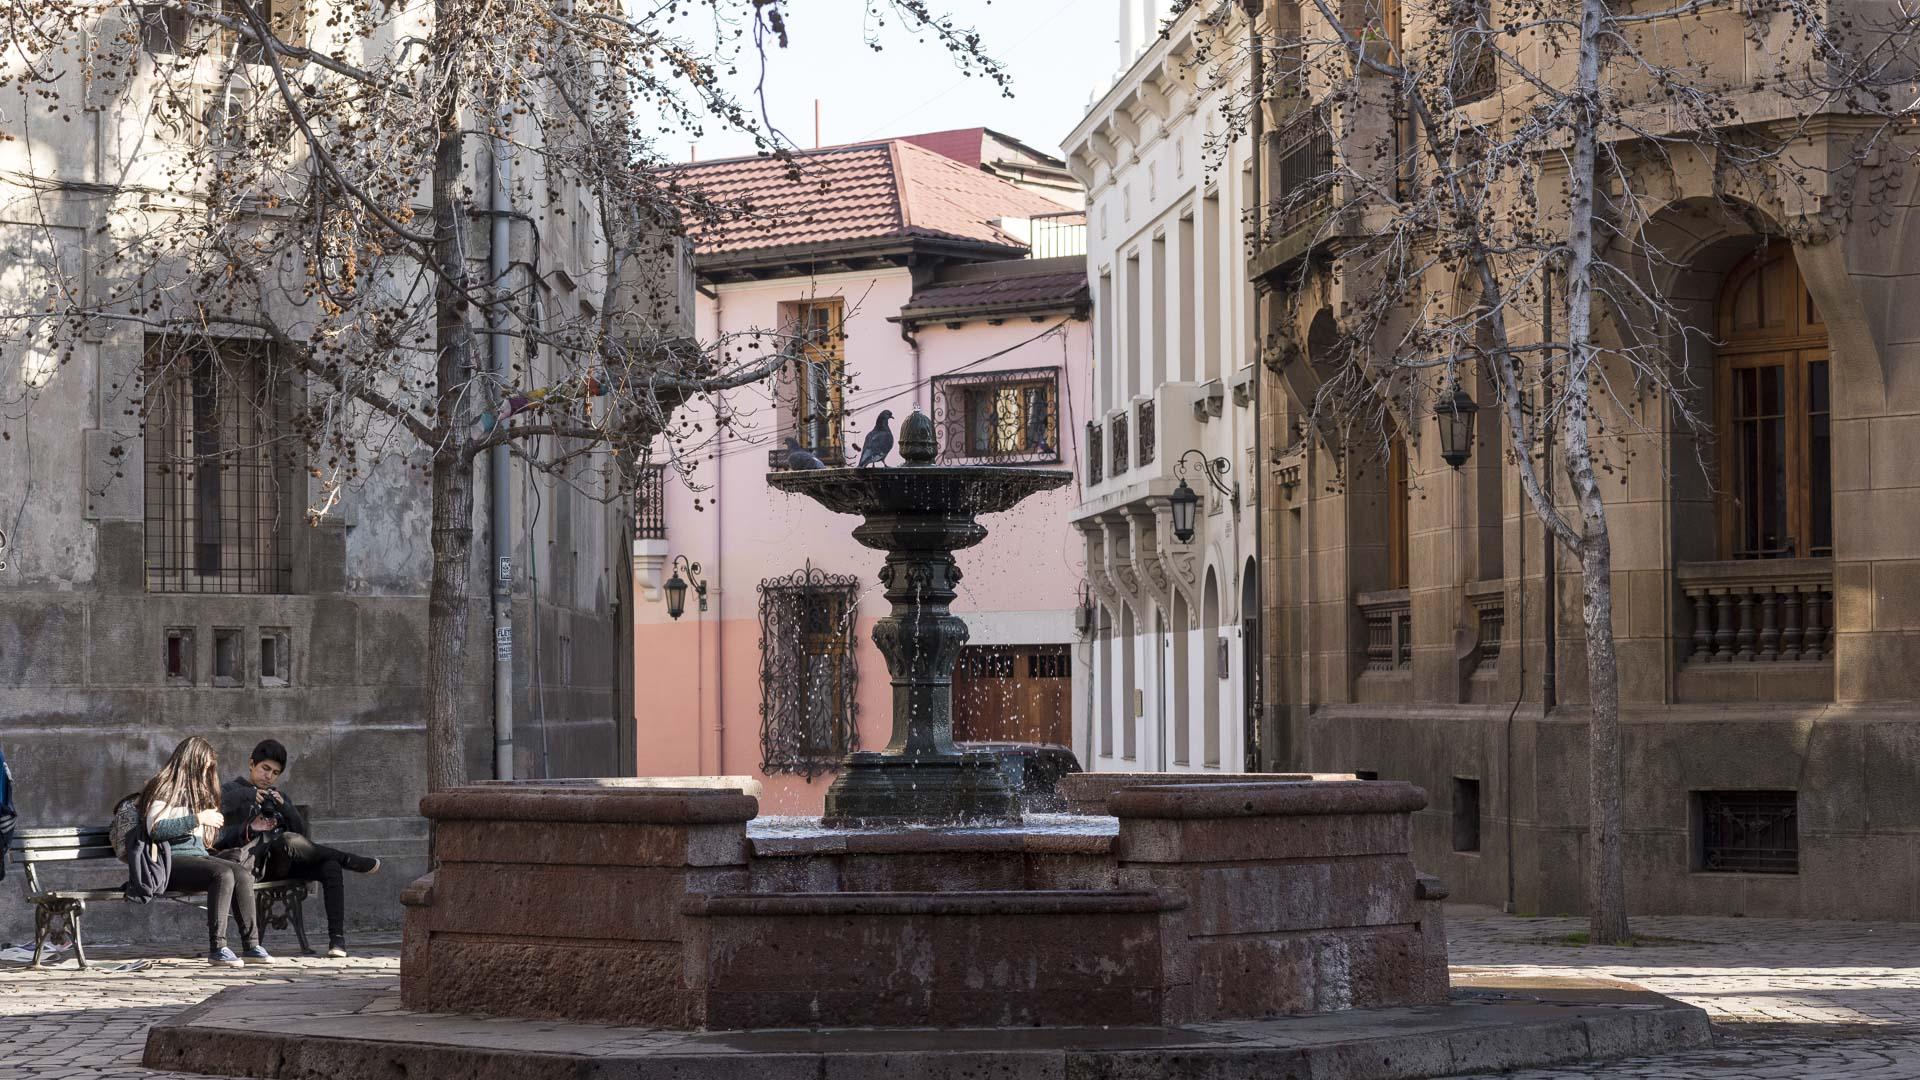 Barrio Concha y Toro, declarado Zona Típica en 1989 por su importancia arquitectónica y constituir un testimonio relevante para la historia urbana de Santiago.